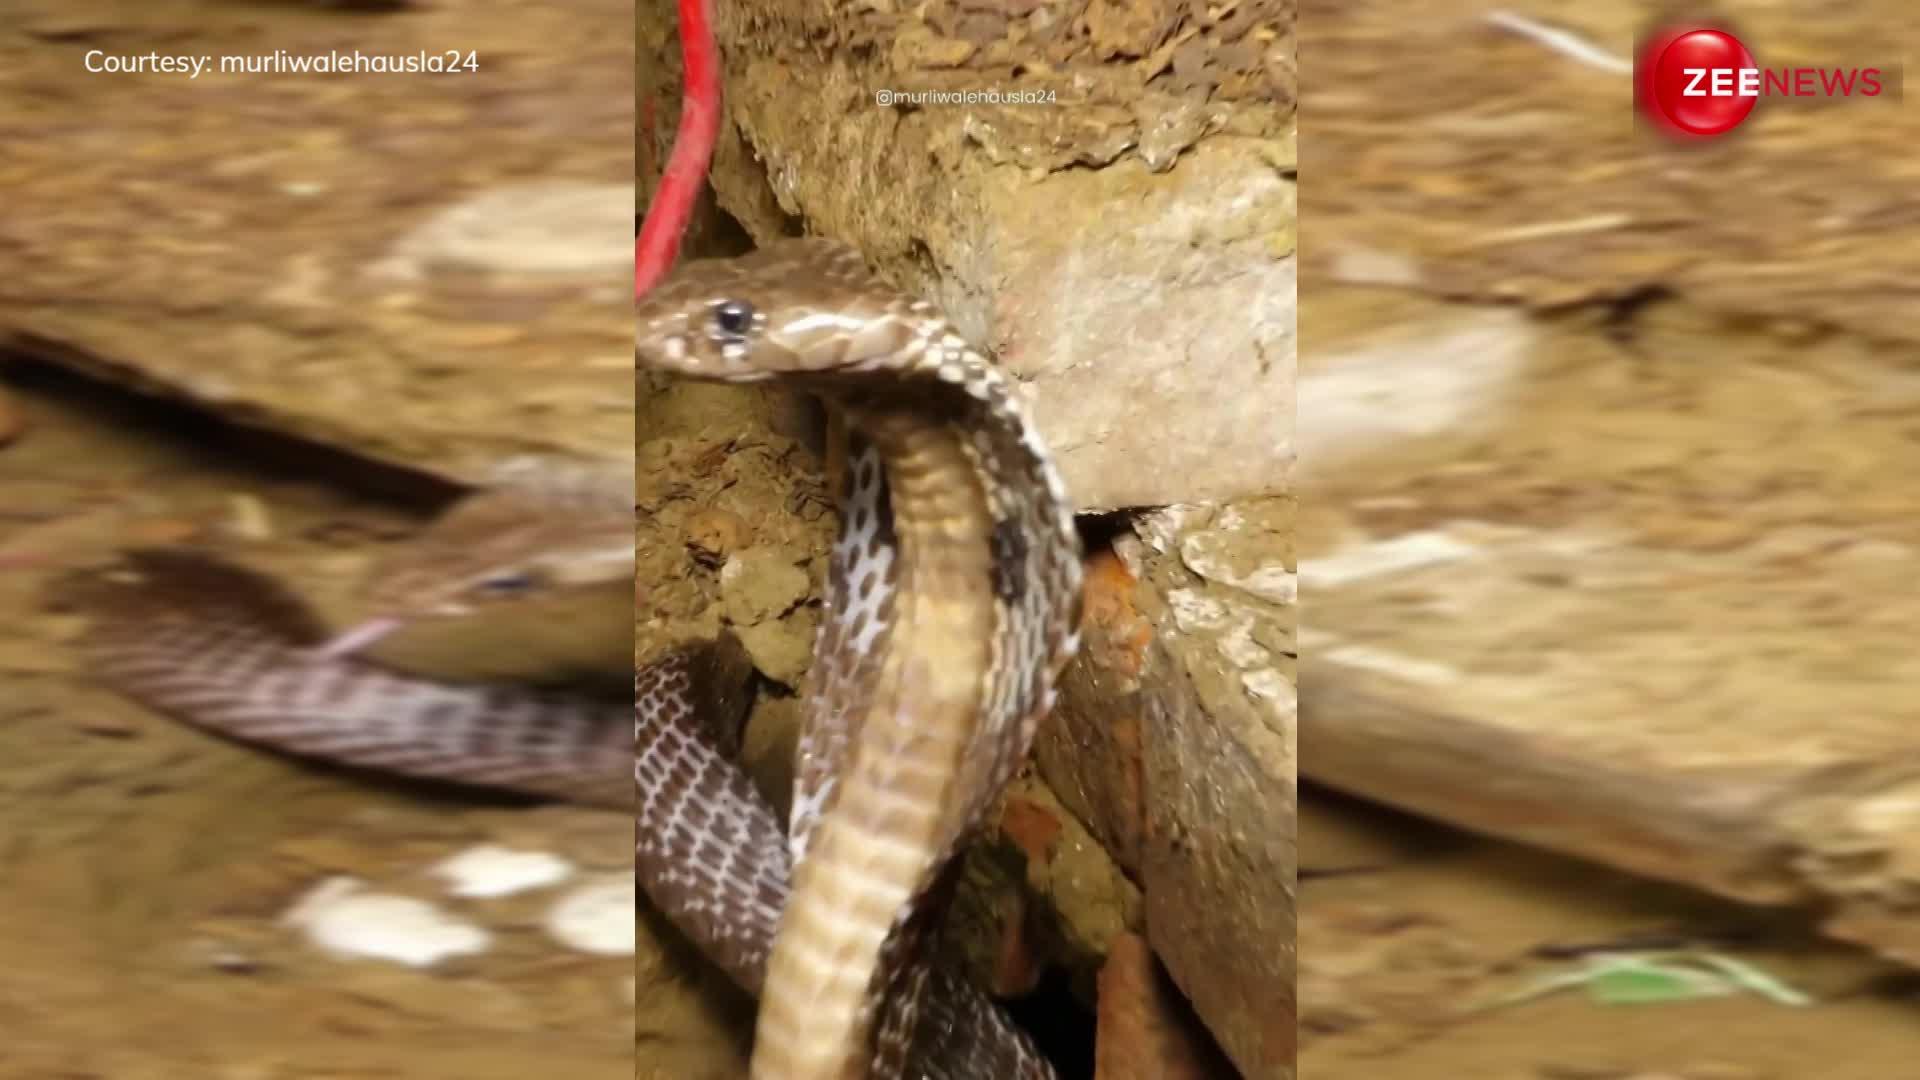 मिट्टी के घोसले के अंदर अपने अंडों की जान रक्षा करती दिखी फीमेल King Cobra, वायरल हुआ वीडियो